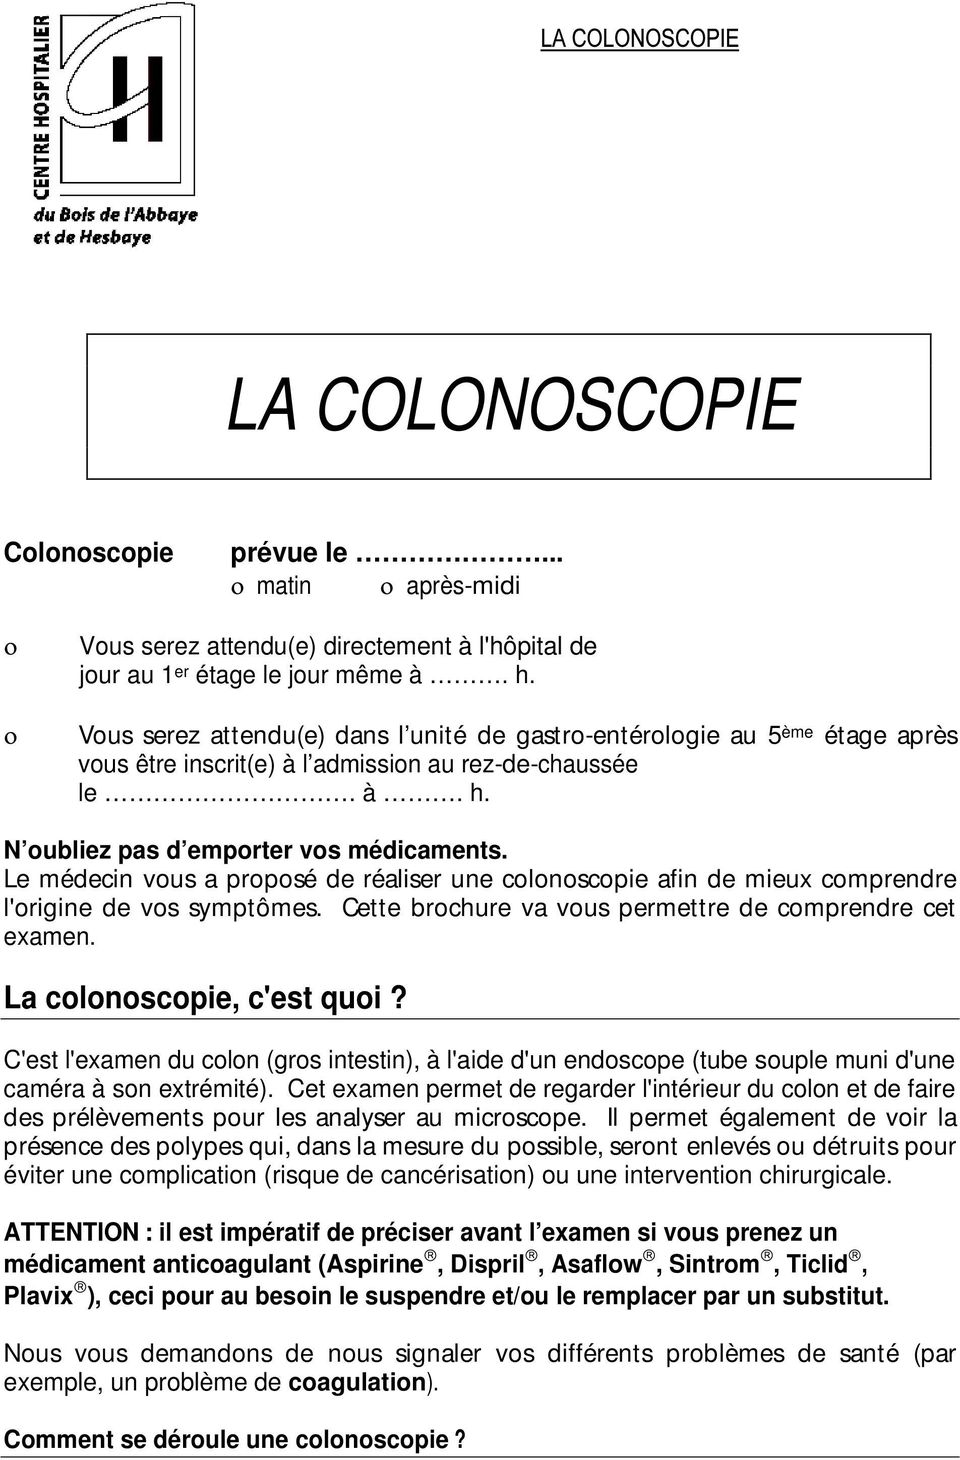 Le médecin vous a proposé de réaliser une colonoscopie afin de mieux comprendre l'origine de vos symptômes. Cette brochure va vous permettre de comprendre cet examen. La colonoscopie, c'est quoi?